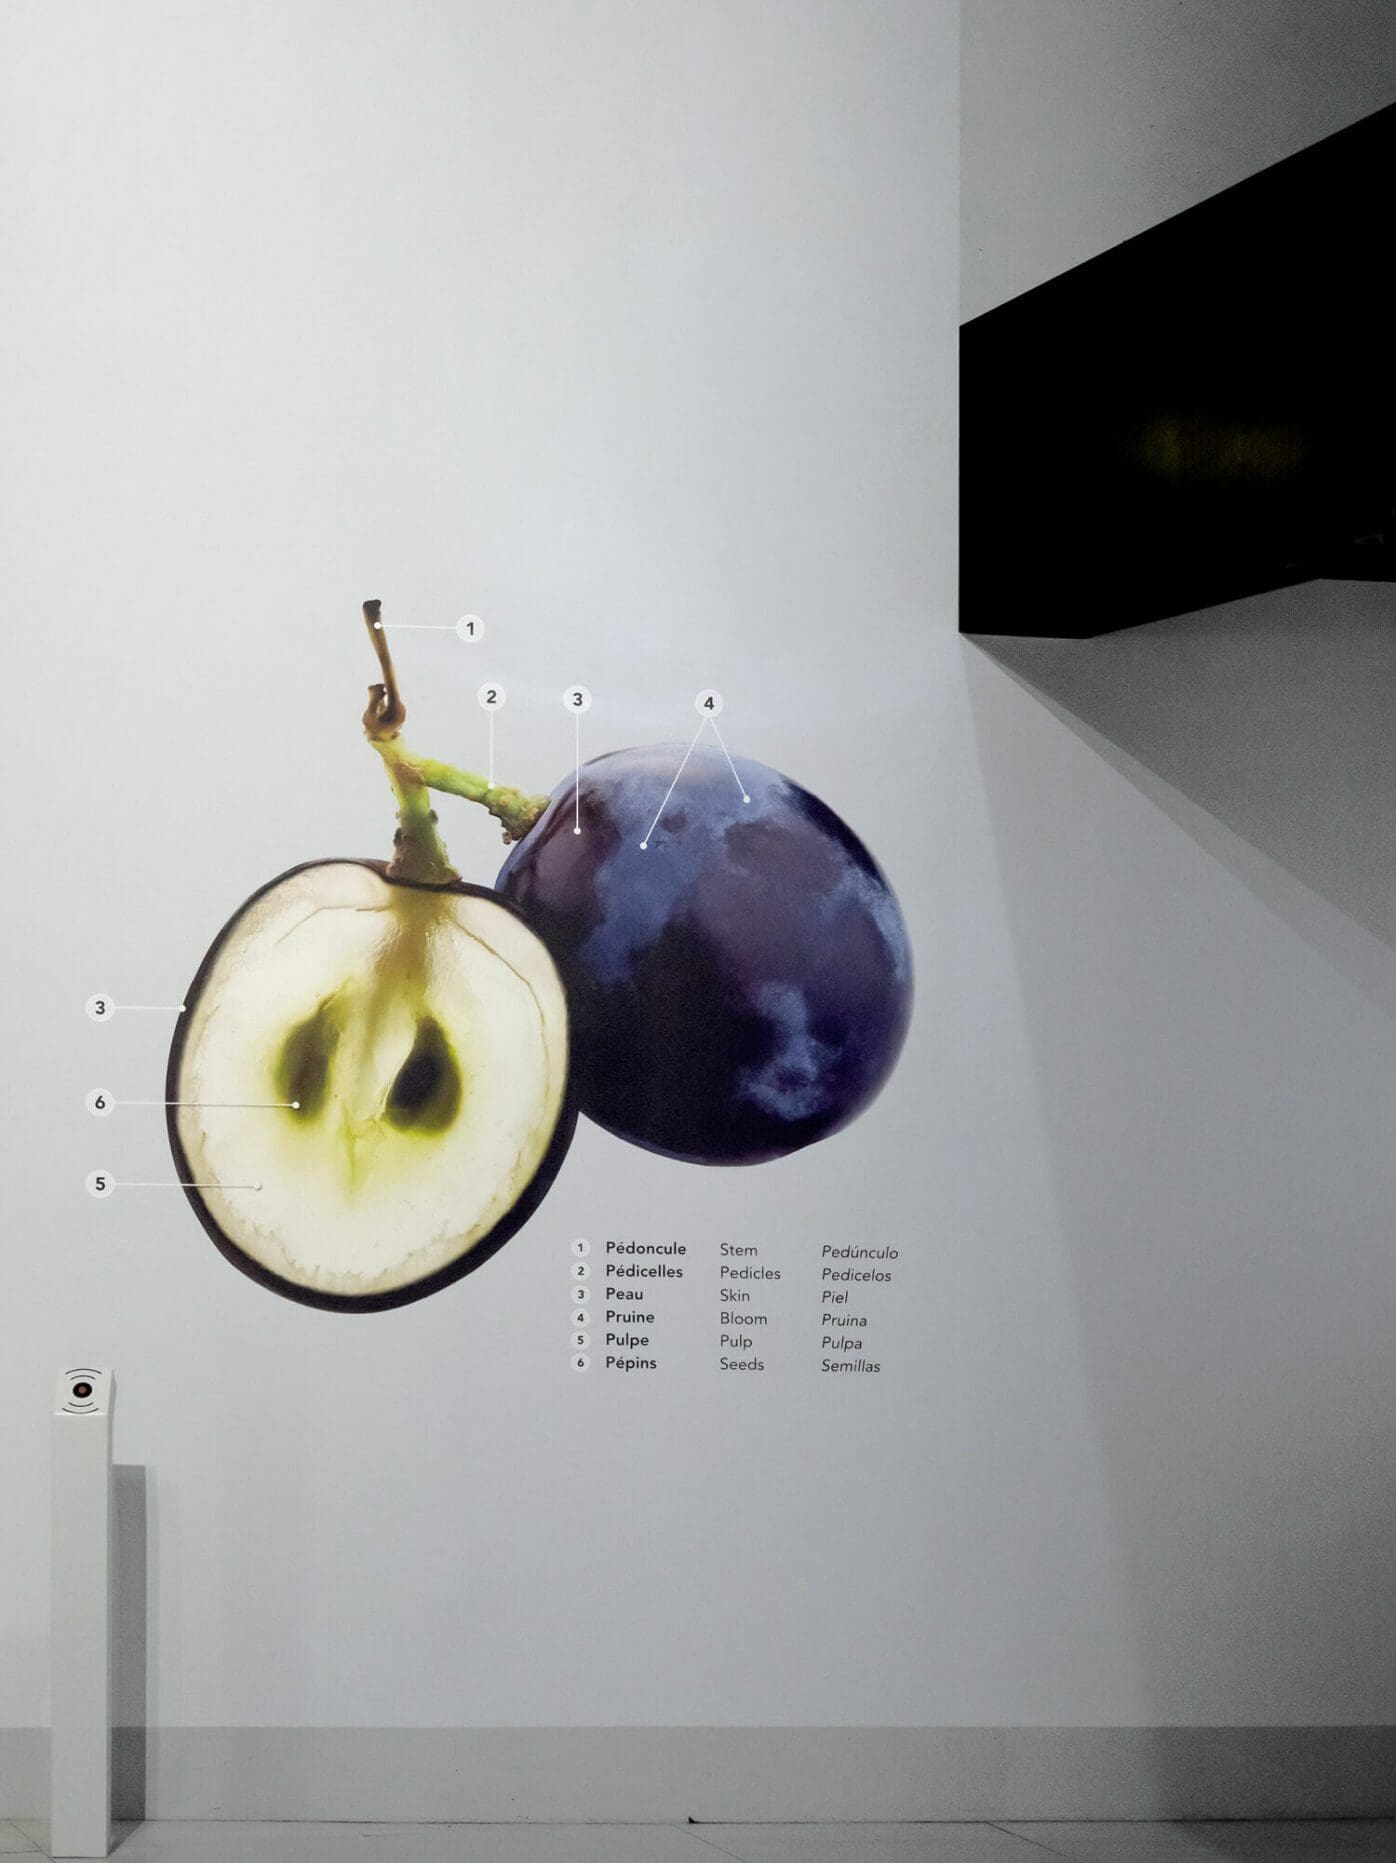 Le grain de raisin géant en coupe, design pédagogique par IchetKar